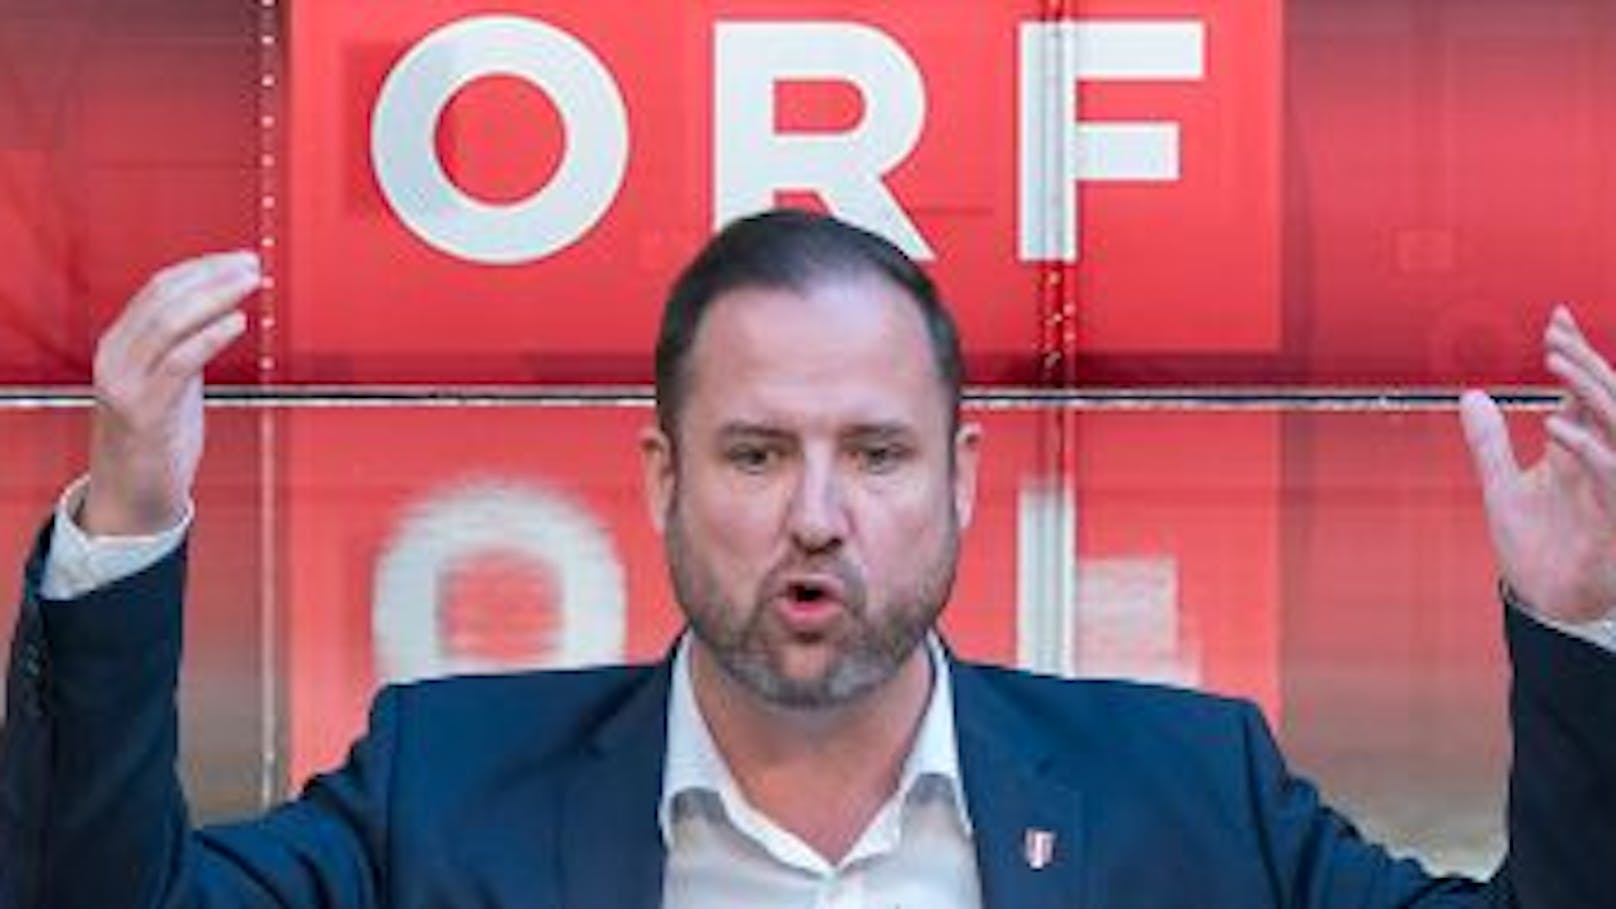 "Obszön" – Gehälter von "ORF-Eliten" machen FPÖ zornig